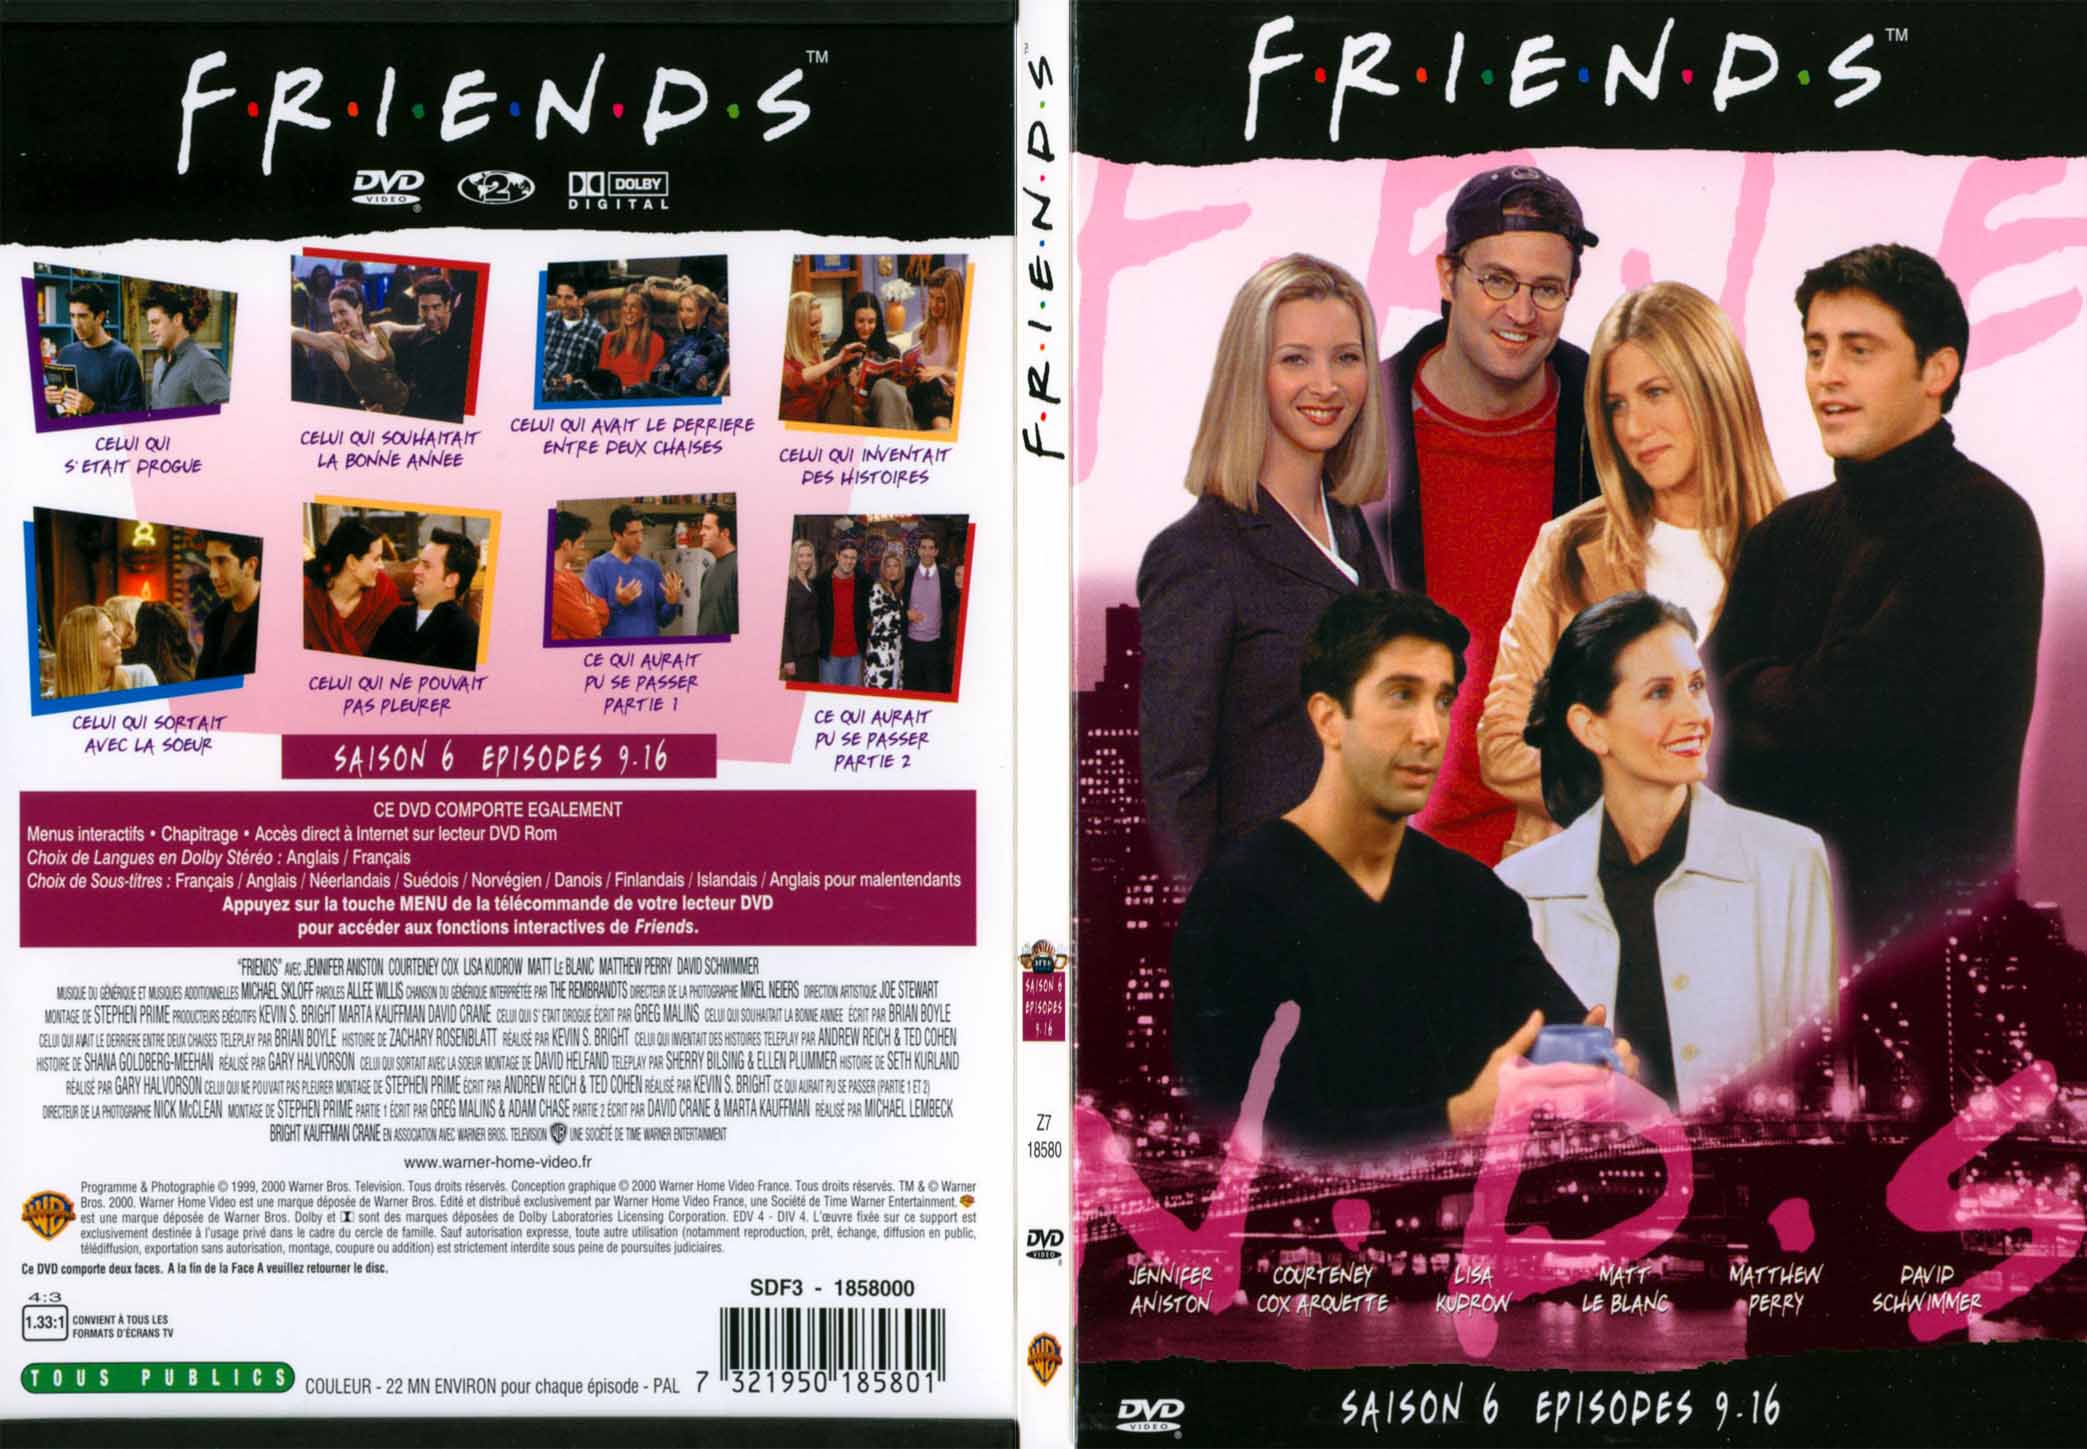 Jaquette DVD Friends saison 6 dvd 2 - SLIM